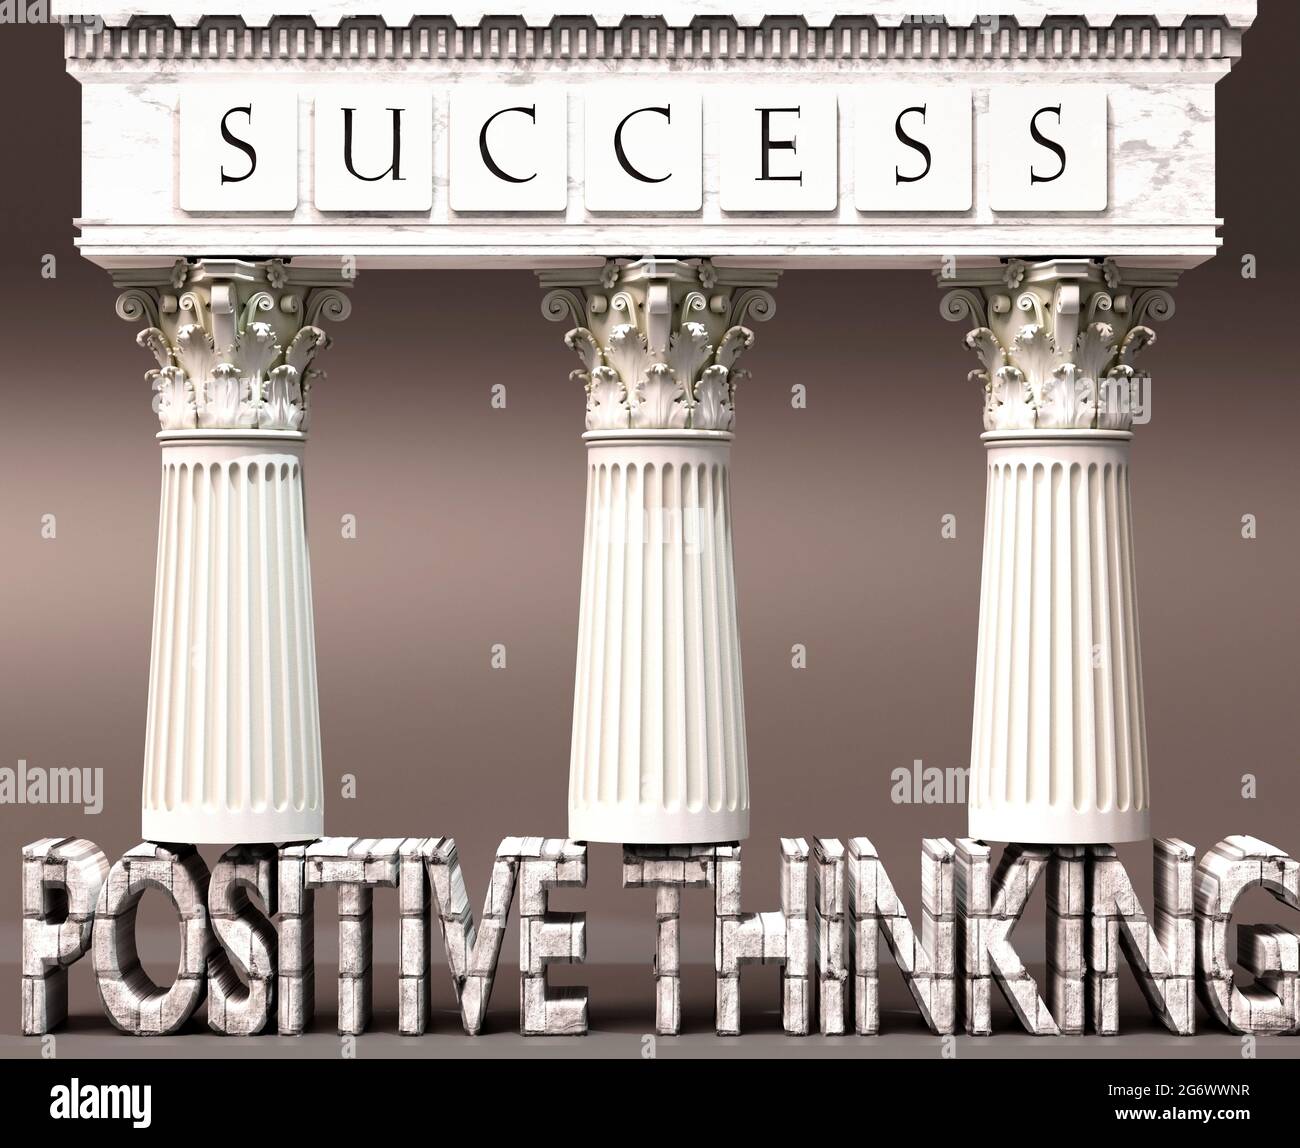 El pensamiento positivo como fundamento del éxito - simbolizado por los pilares del éxito apoyados por el pensamiento positivo para demostrar que es esencial para el reachi Foto de stock